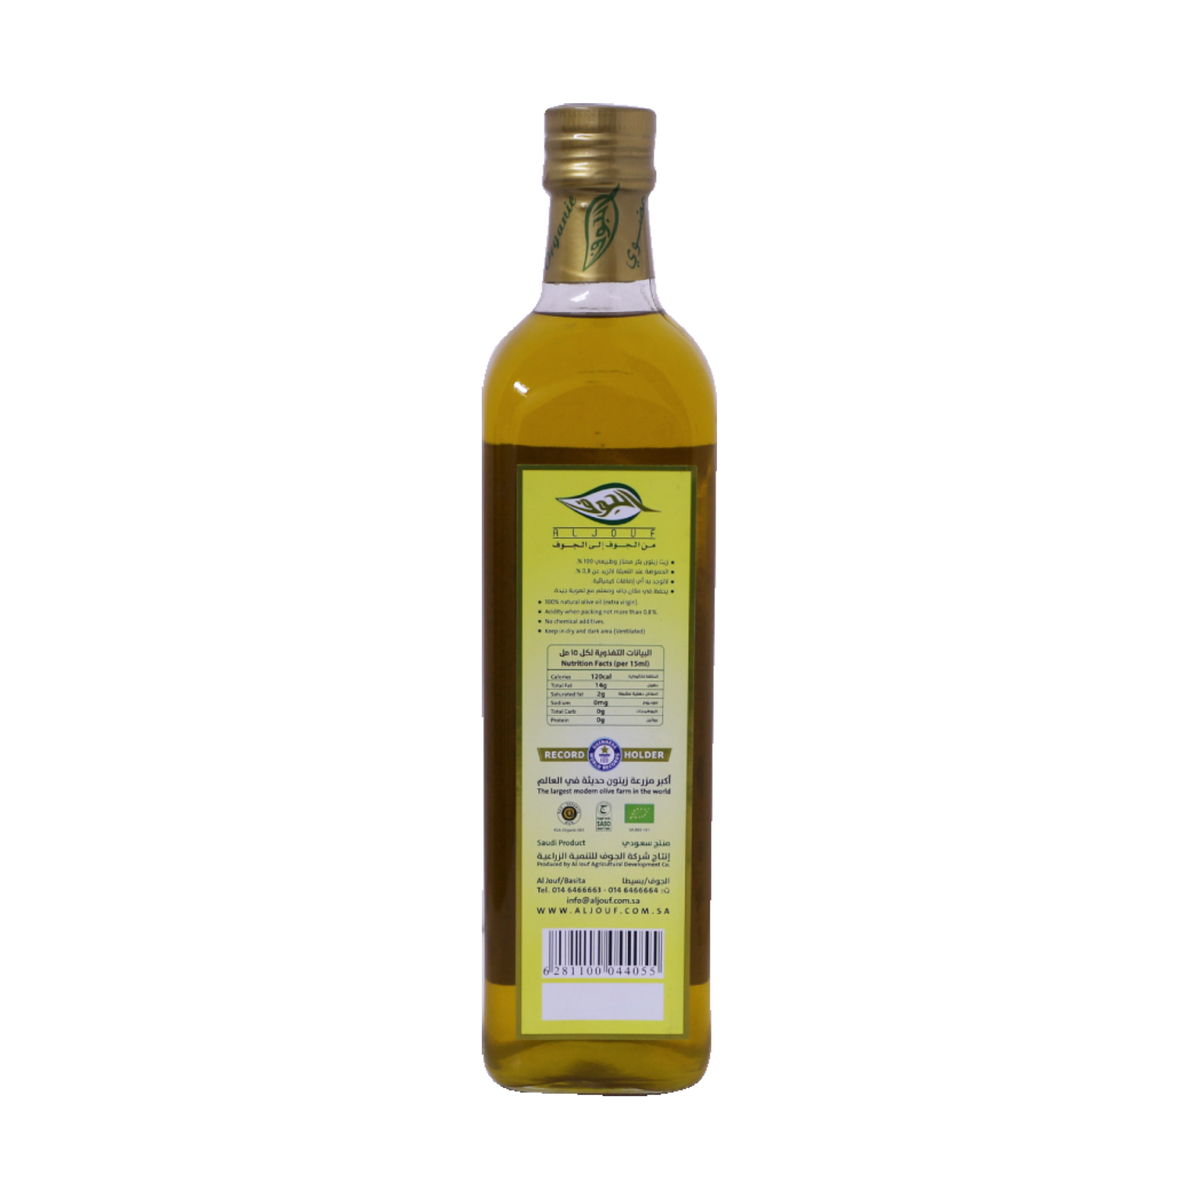 Al Jouf Organic Olive Oil 750ml